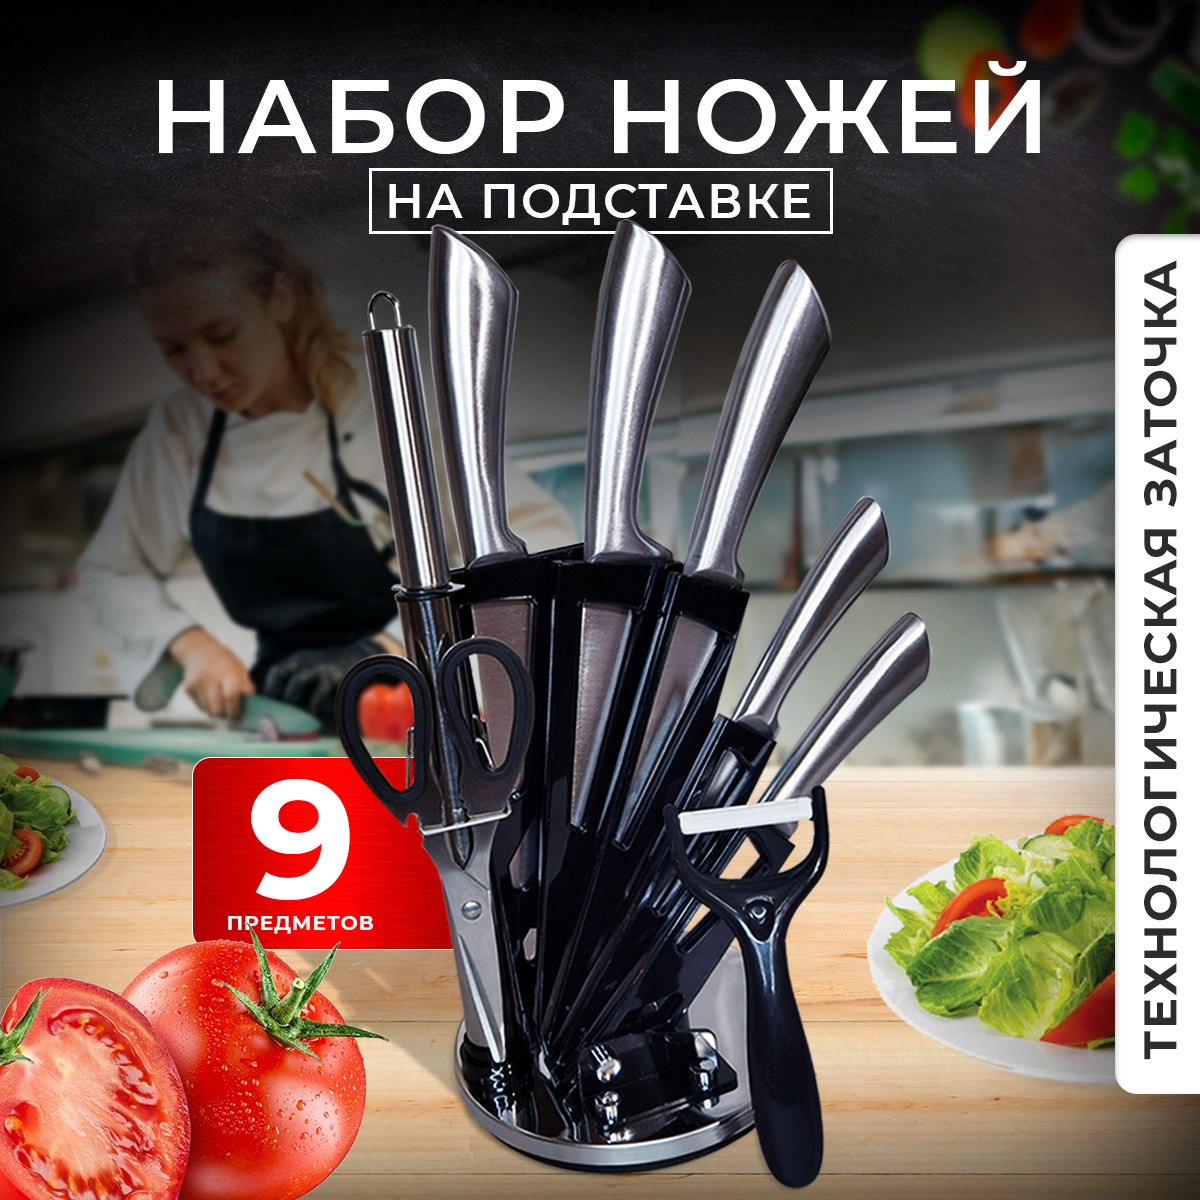 Набор ножей кухонных с подставкой Wowzilla Marvisto, 9 предметов